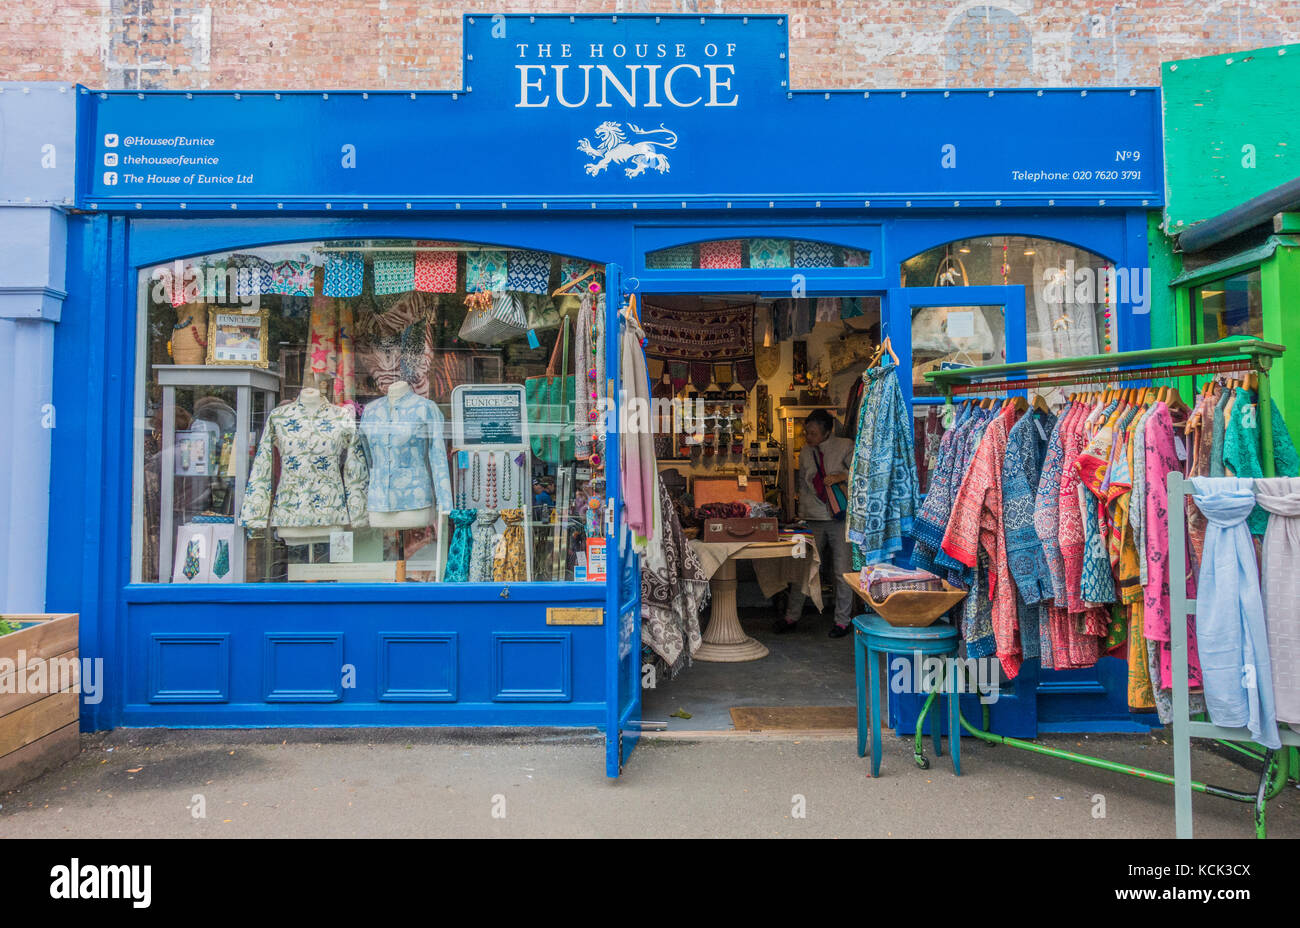 Das Haus von Eunice - ein malerisches, Ethik, fairer Handel, elegante Stoffe, Textilien und Kleidung Shop, in Gabriel's Wharf, South Bank, London, England, UK. Stockfoto